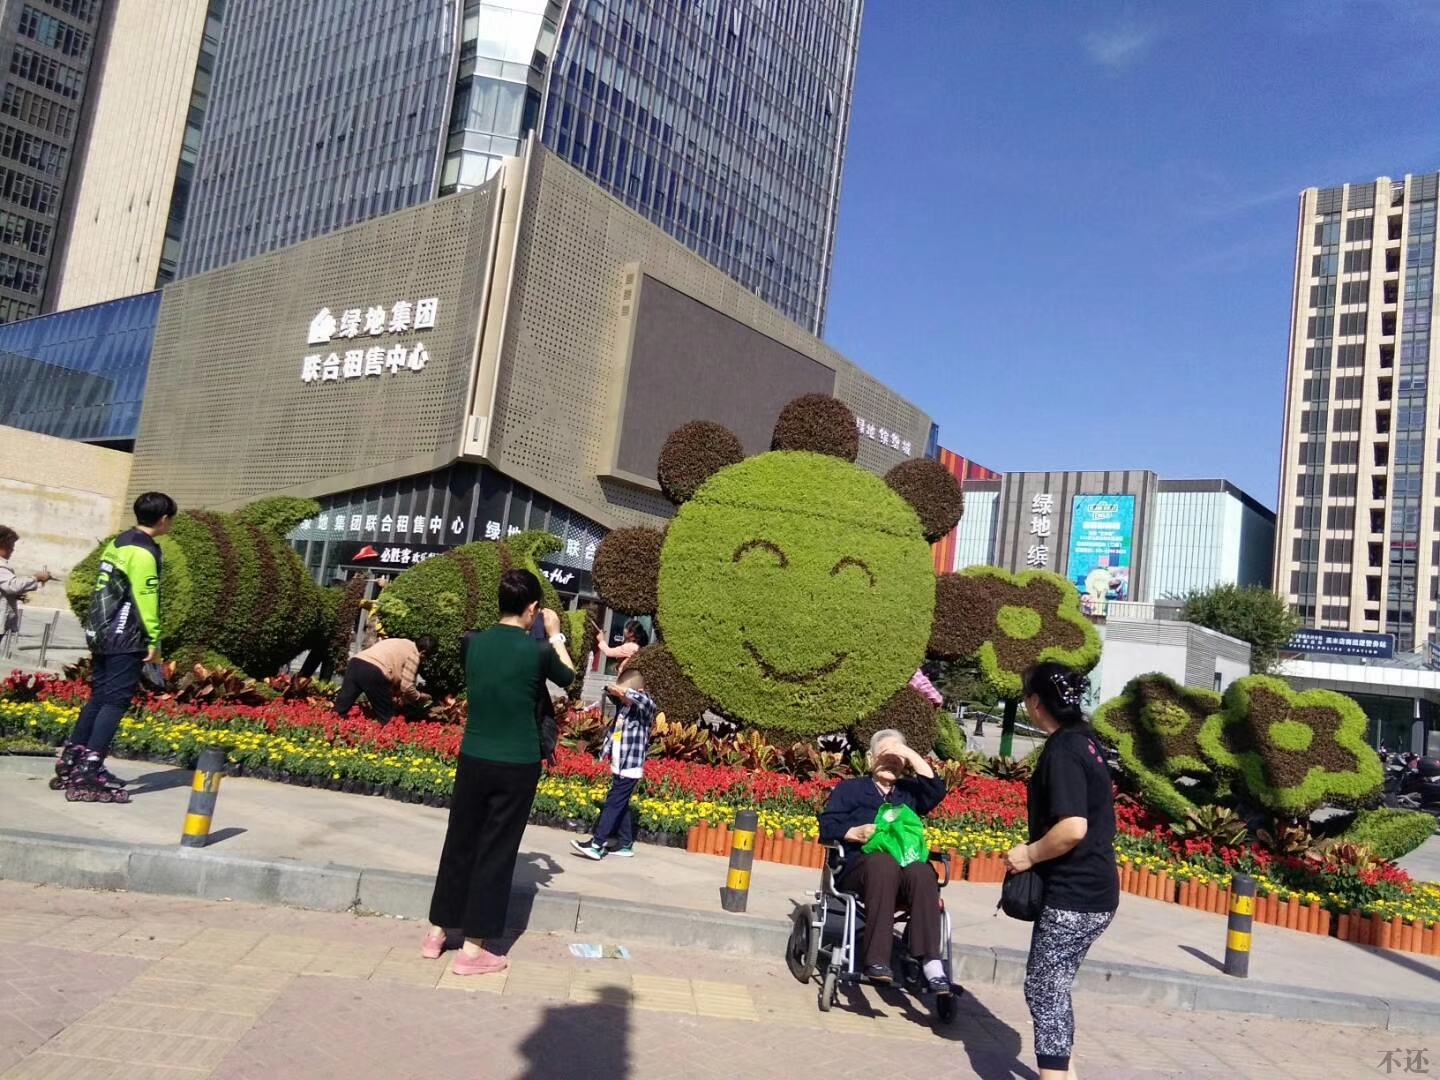 蚌埠立体花坛营造节日氛围 着力提升景观效果